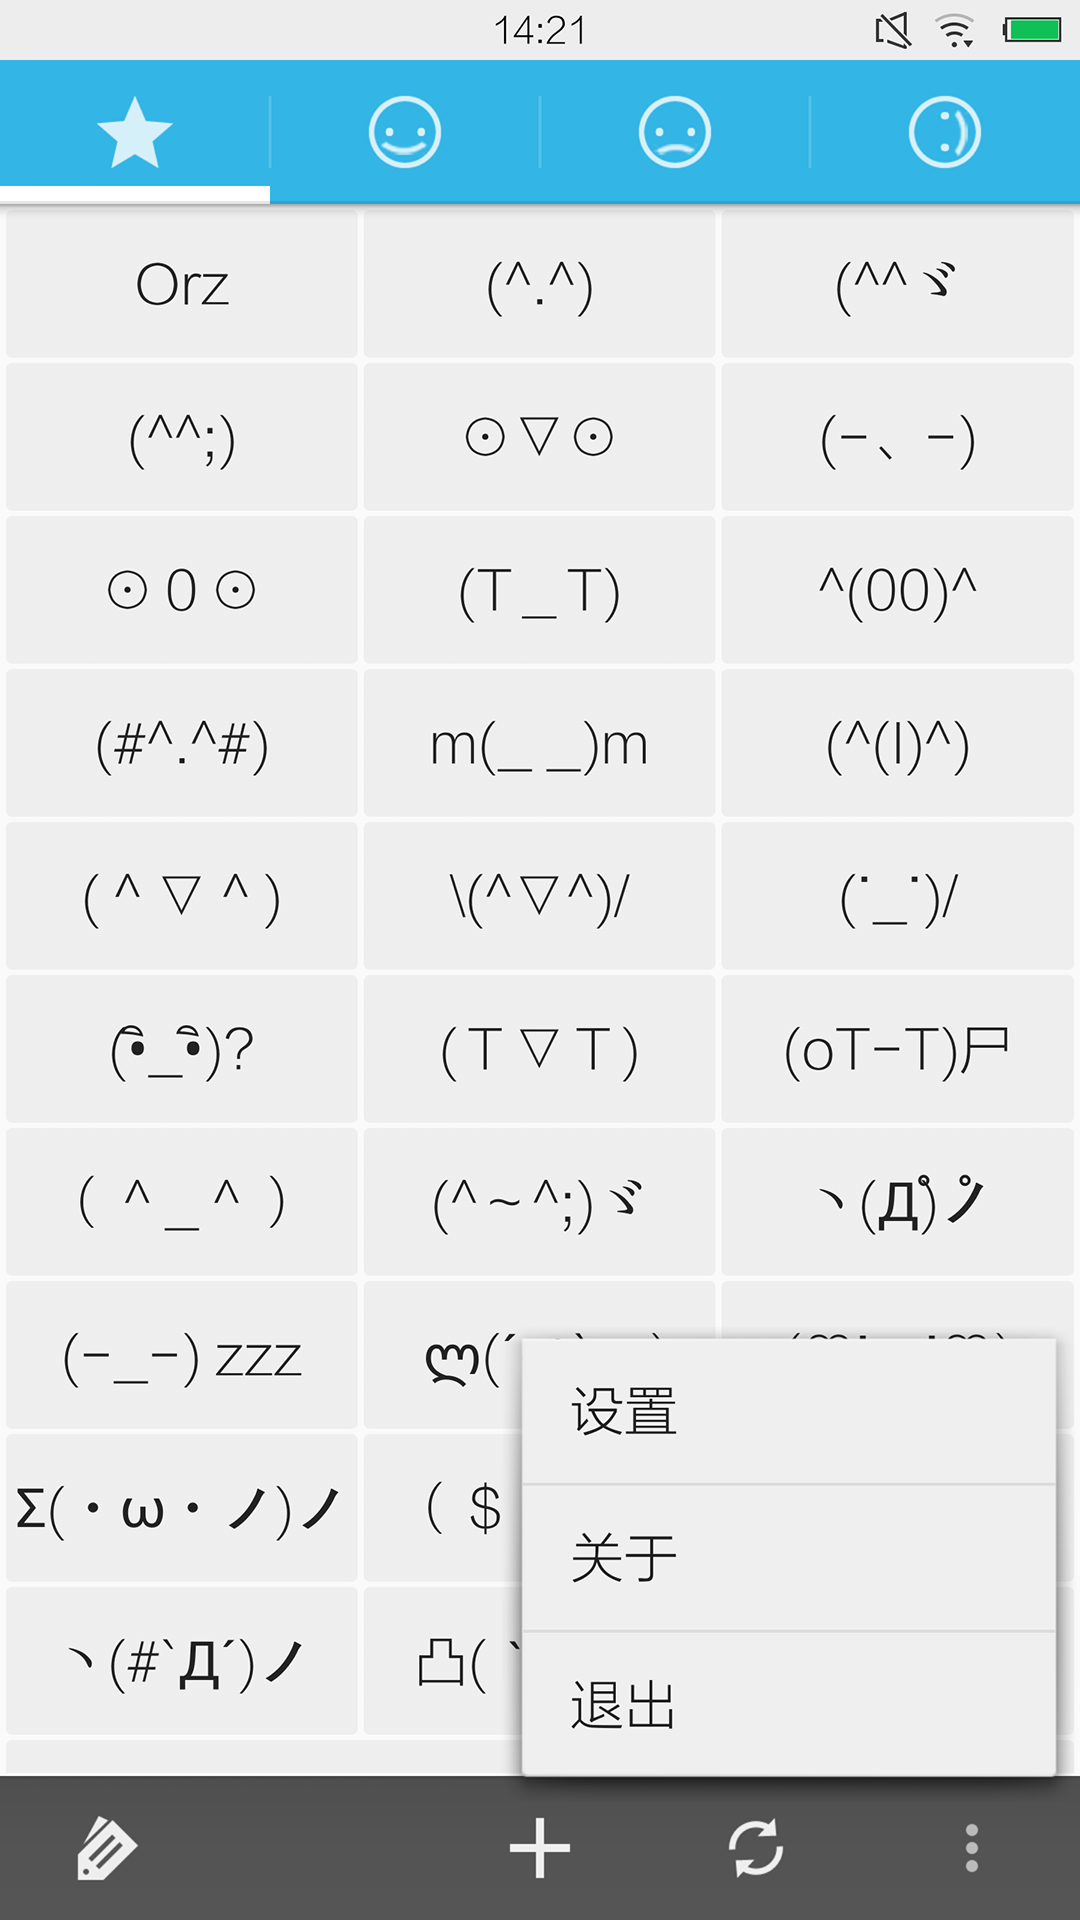 (^_^ 本应用提供的表情符号是ascii式的表情符号,即颜文字,非图片式的